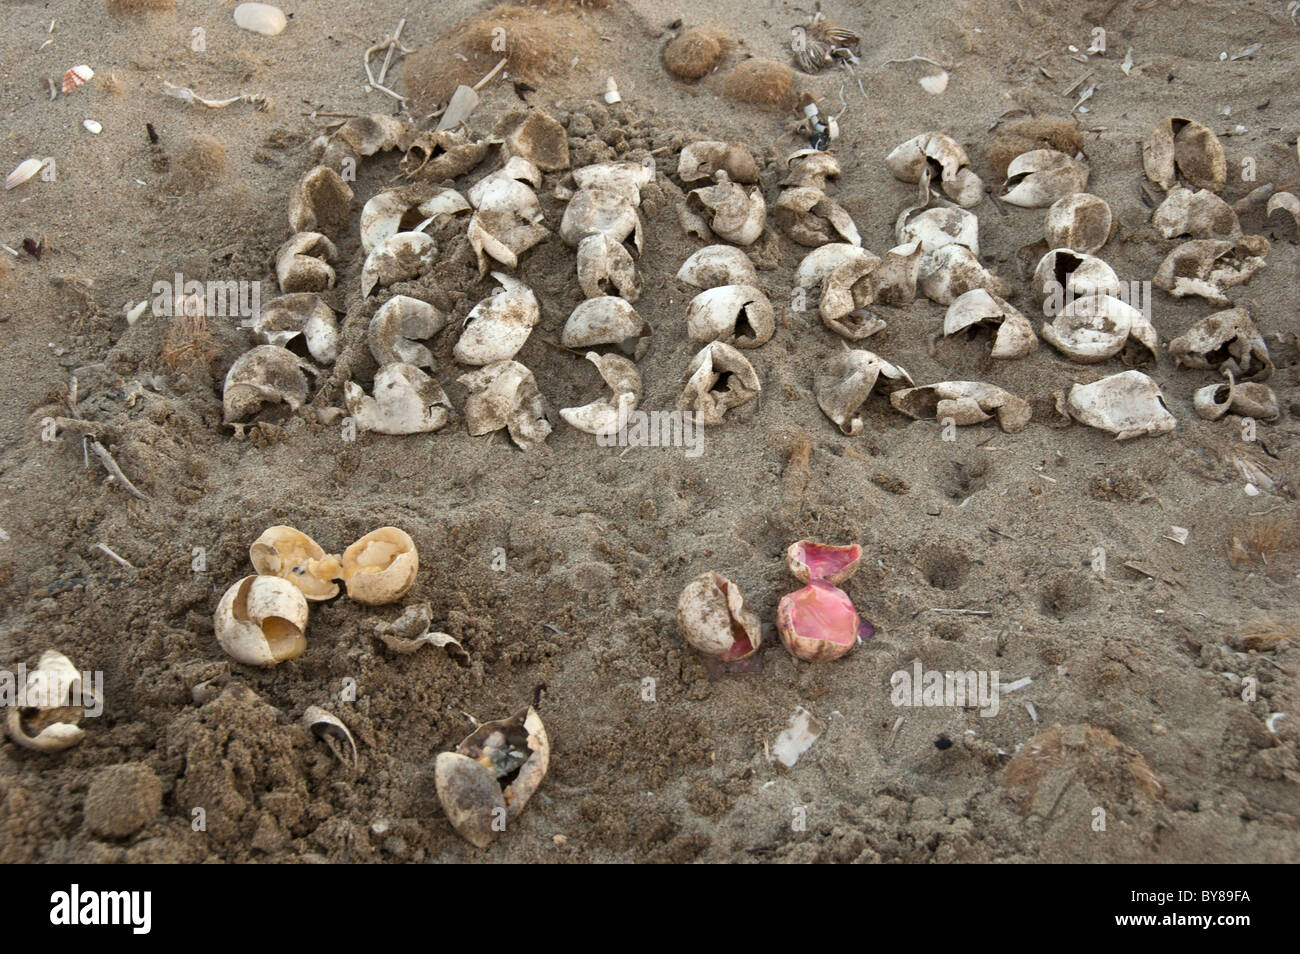 Tortuga boba cáscaras de huevo excavado por voluntarios de conservación de un nido de playa Foto de stock